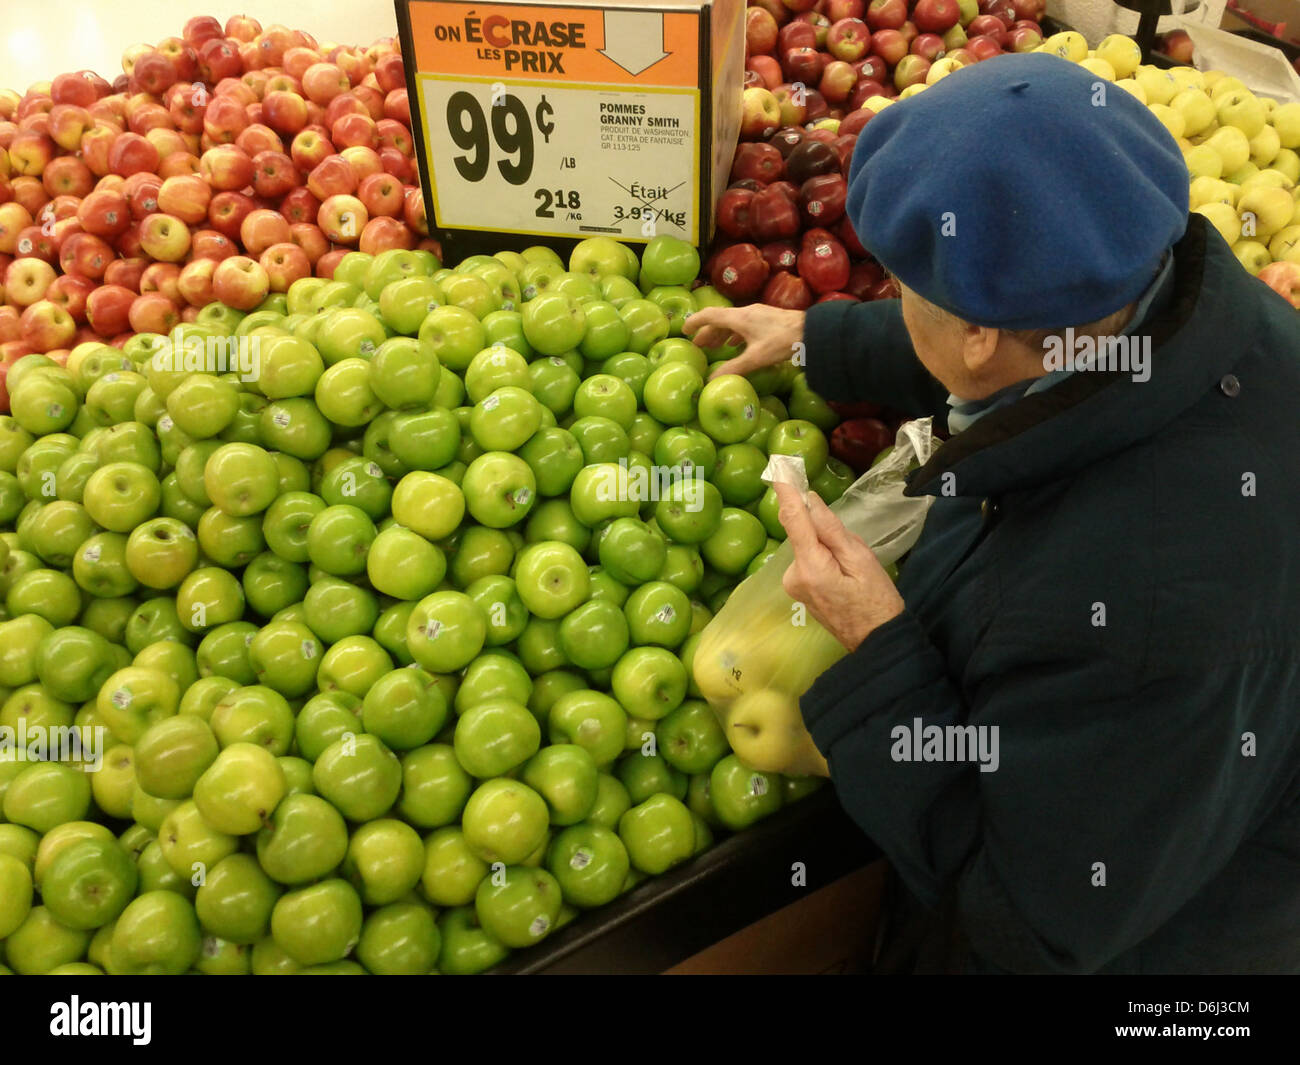 Old Lady shopping des fruits dans un supermarché Banque D'Images